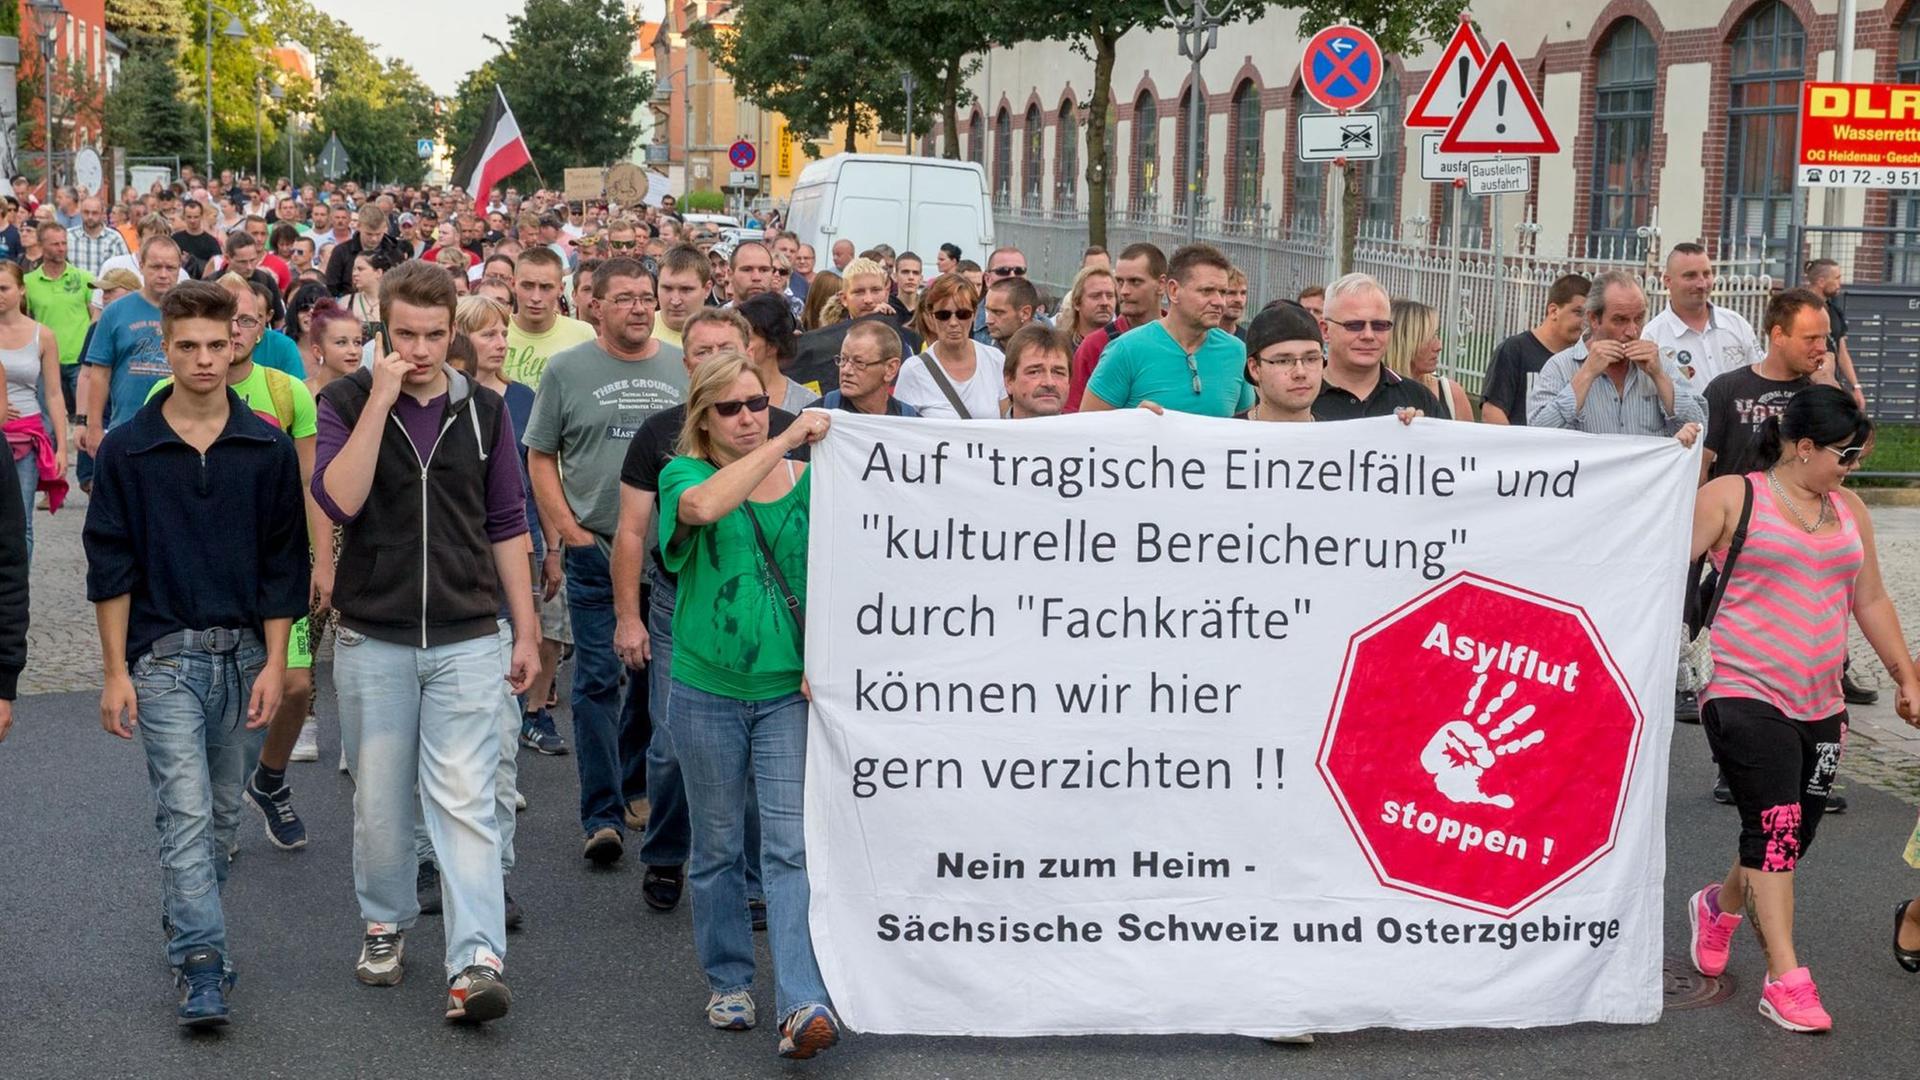 Demonstranten tragen in Heidenau ein Plakat mit der Aufschrift: "Asylflut stoppen!"